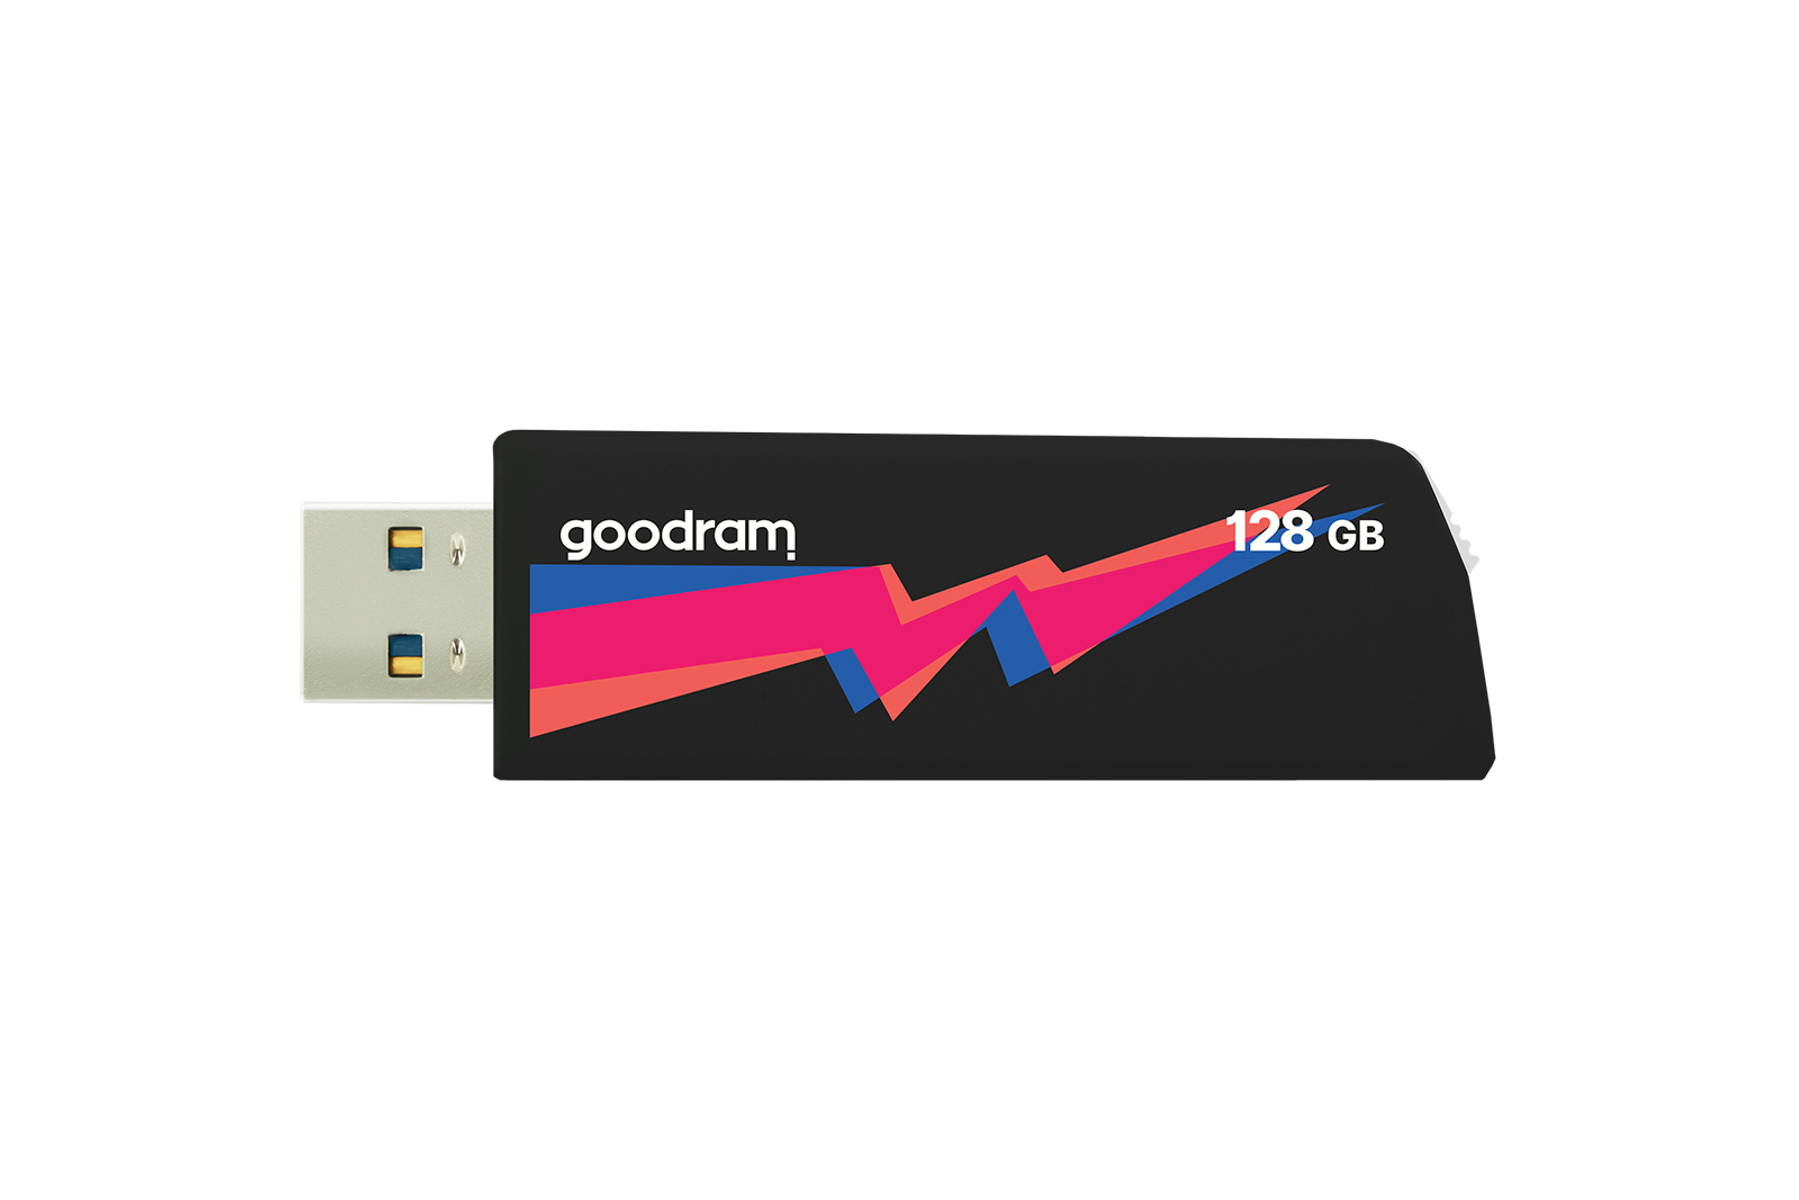 (Schwarz, GOODRAM GB) UCL3-1280K0R11 USB-Flash-Laufwerk 32